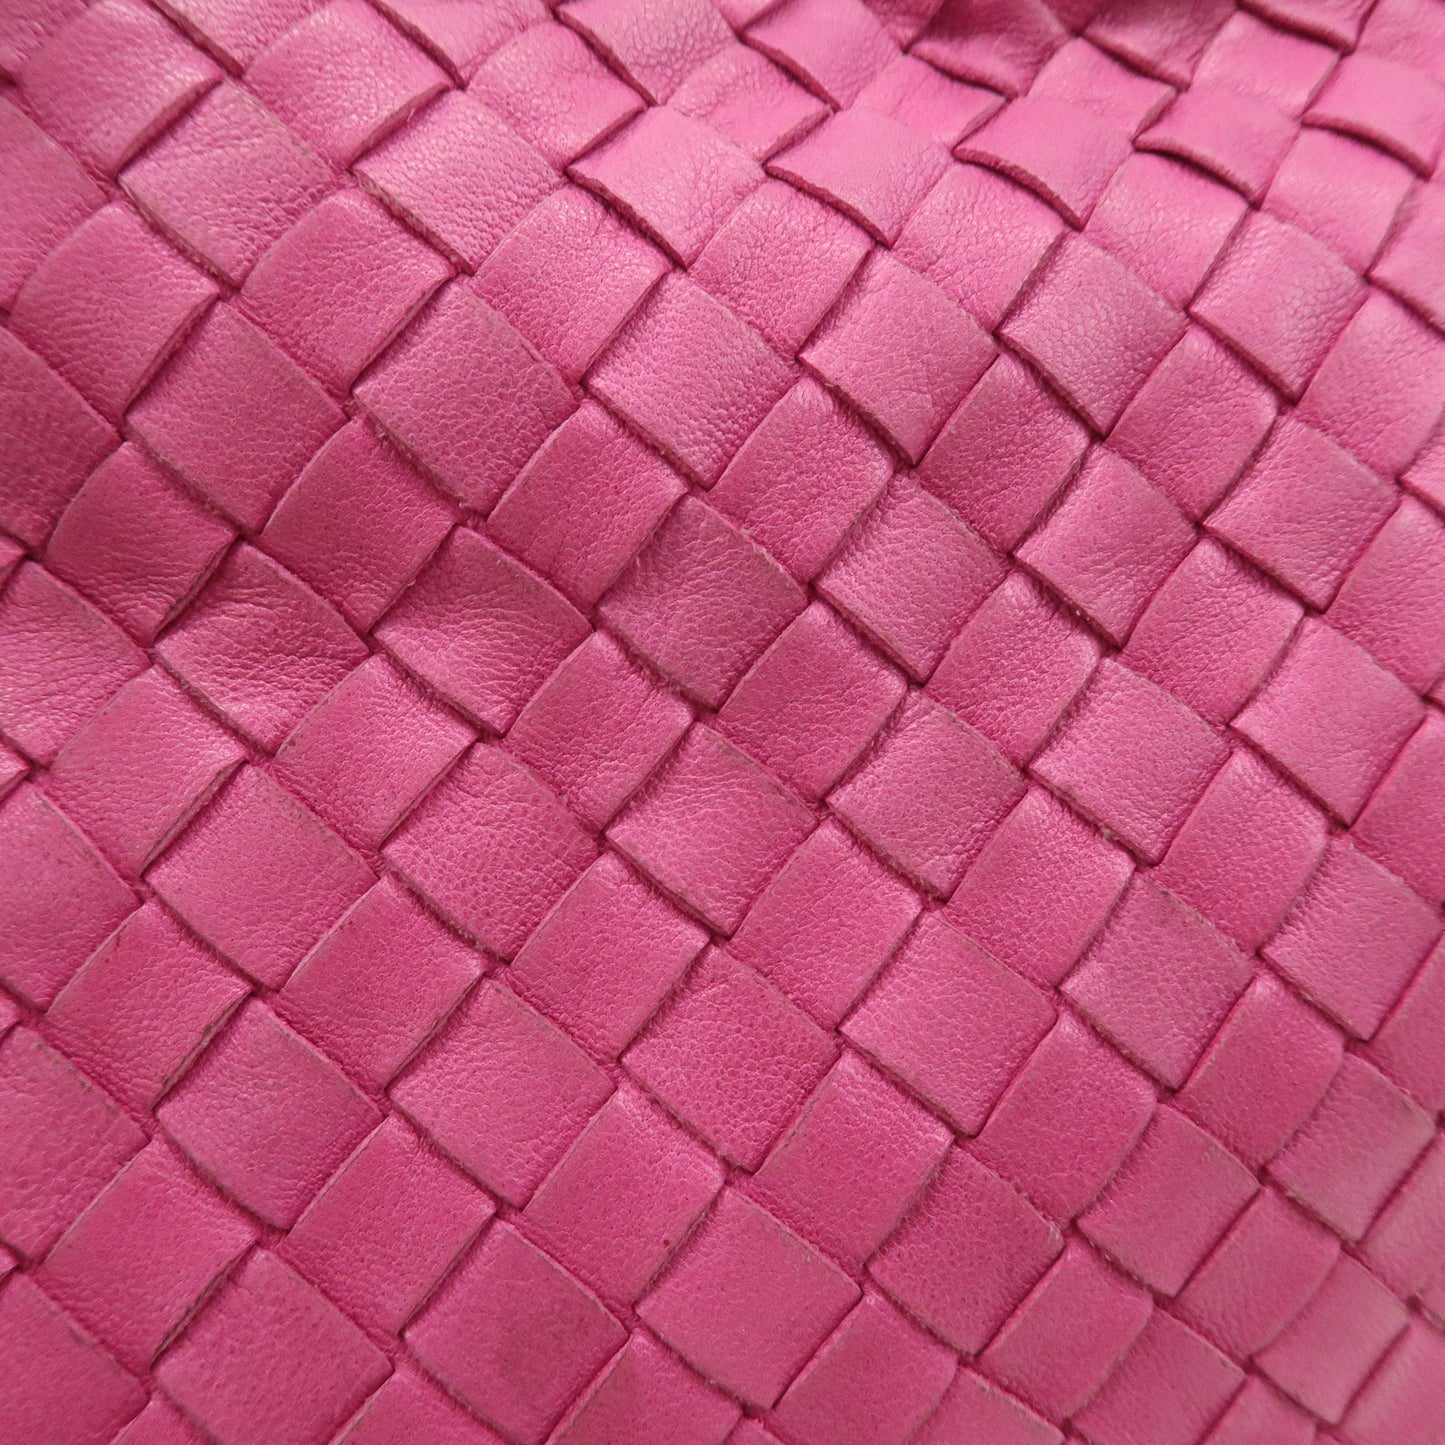 BOTTEGA VENETA Intrecciato Leather Hobo Shoulder Bag Pink 115653